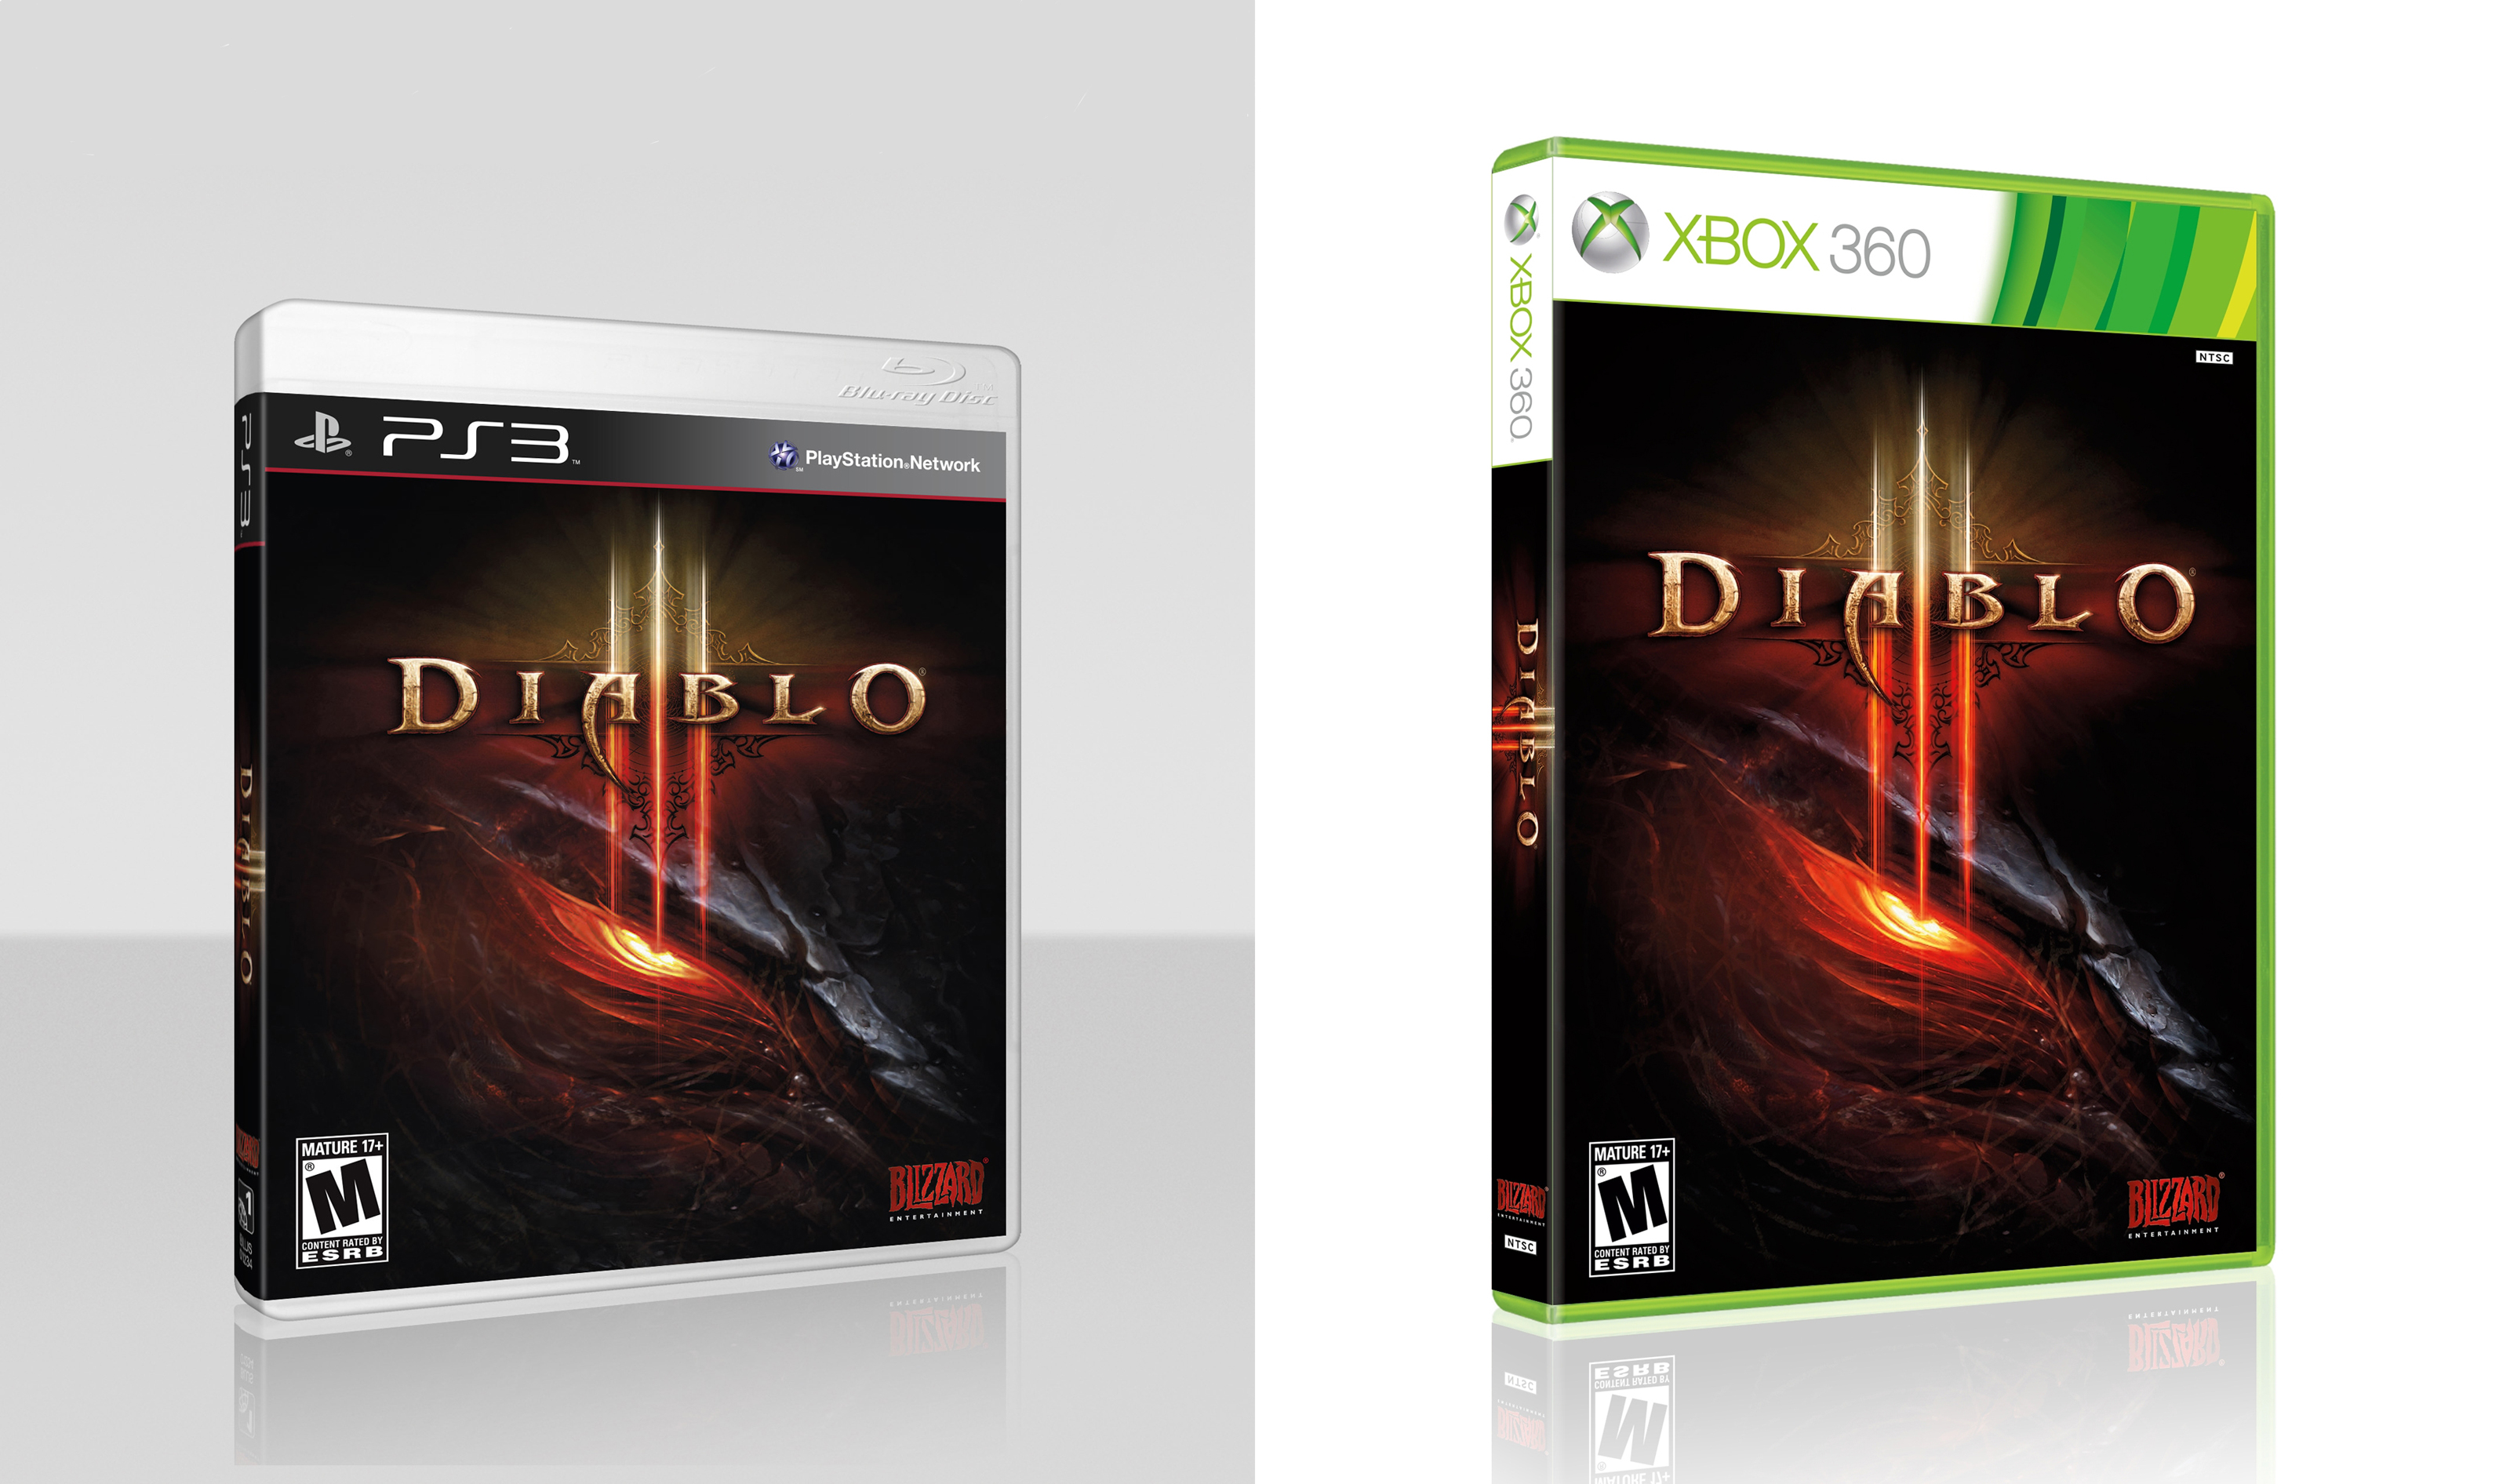 Diablo xbox купить. Диабло 3 Xbox 360. Диабло 3 на Икс бокс 360. Дьябло на Xbox 360. Diablo 3 Xbox 360 диск.